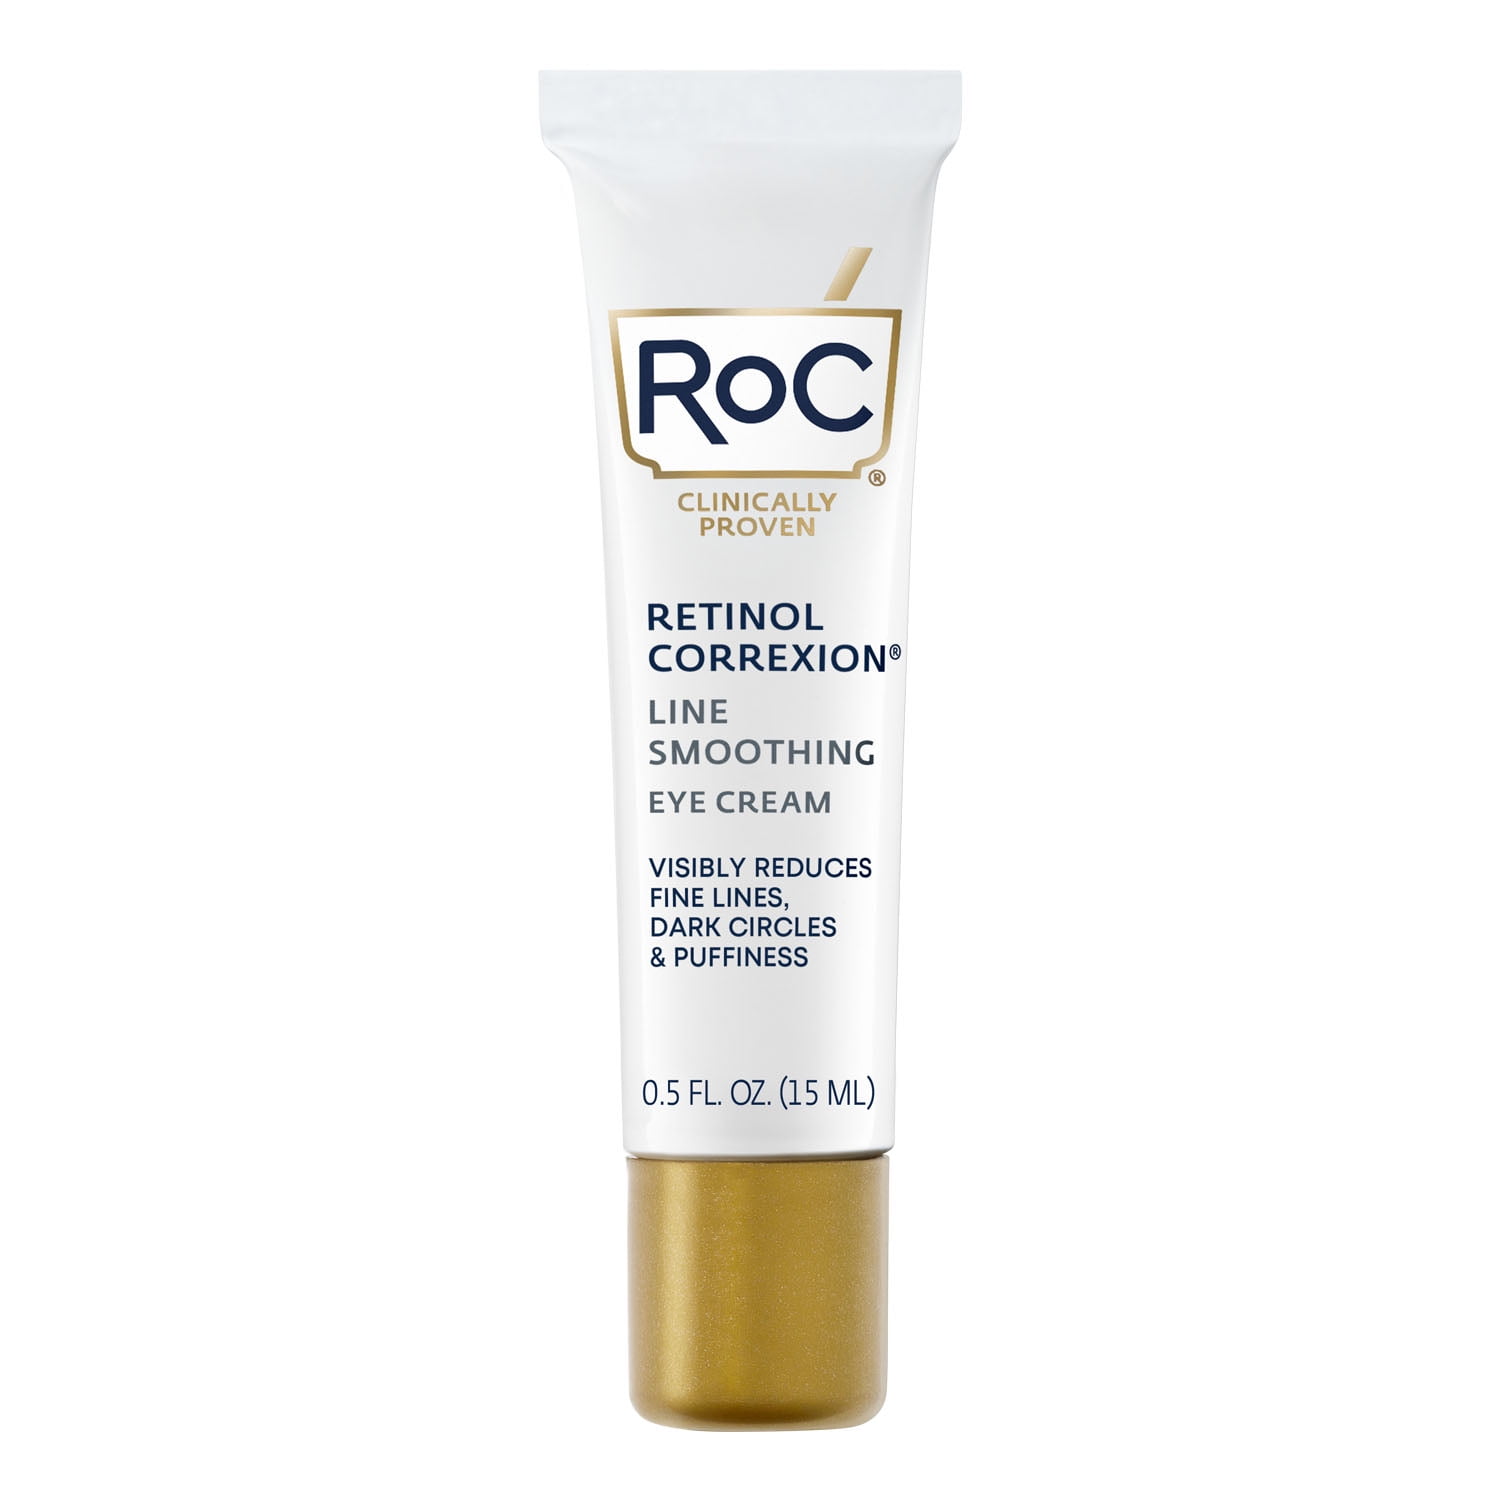 RoC Retinol Correxion Anti-Wrinkle + Firming Eye Cream for Dark Circles & Puffy Eyes, 0.5 oz